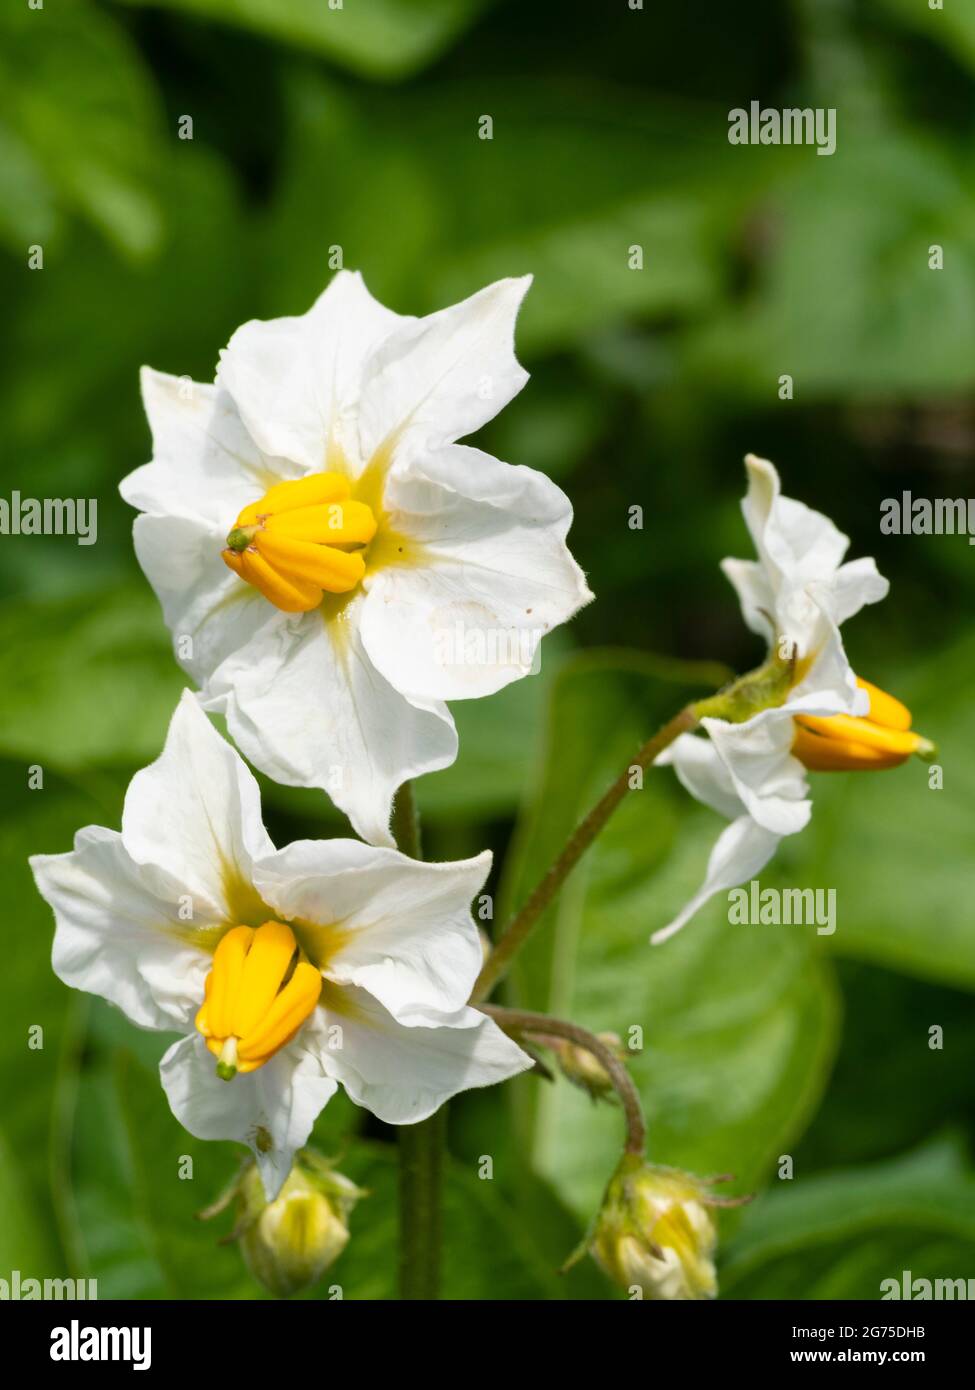 Delicato fiore giallo e bianco di patate prime biologiche coltivate in contenitori, Solanum tuberosum "Casablanca" Foto Stock